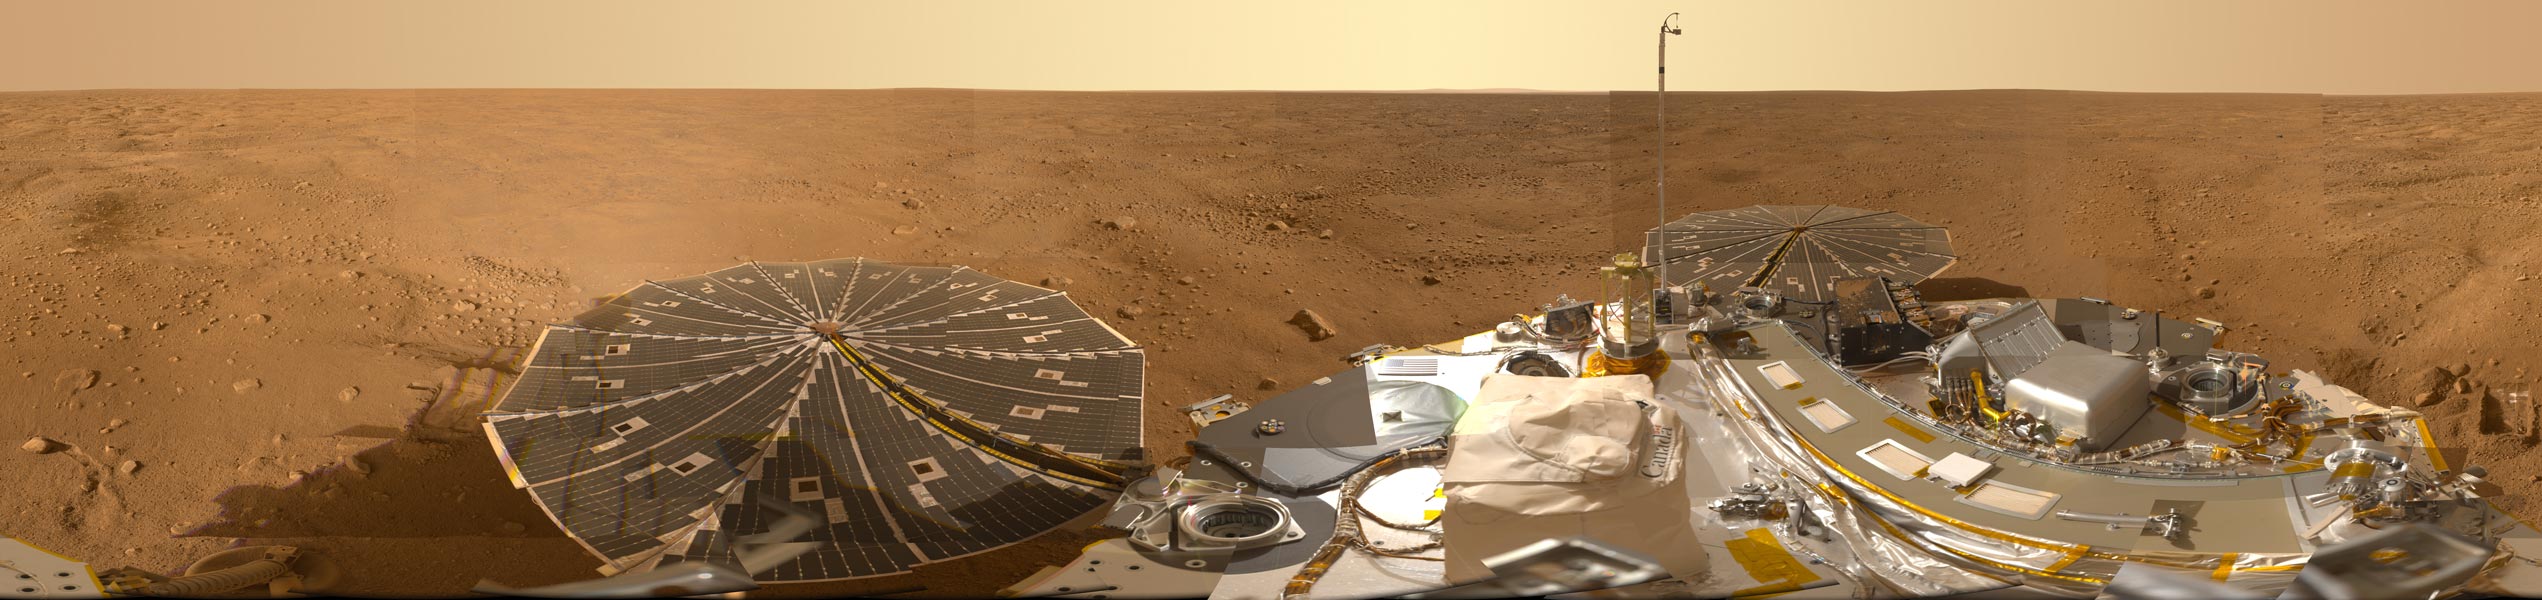 Am unteren Bildrand ist die Landesonde Phoenix, dahinter die Marsoberfläche und oben die Marsatmosphäre.